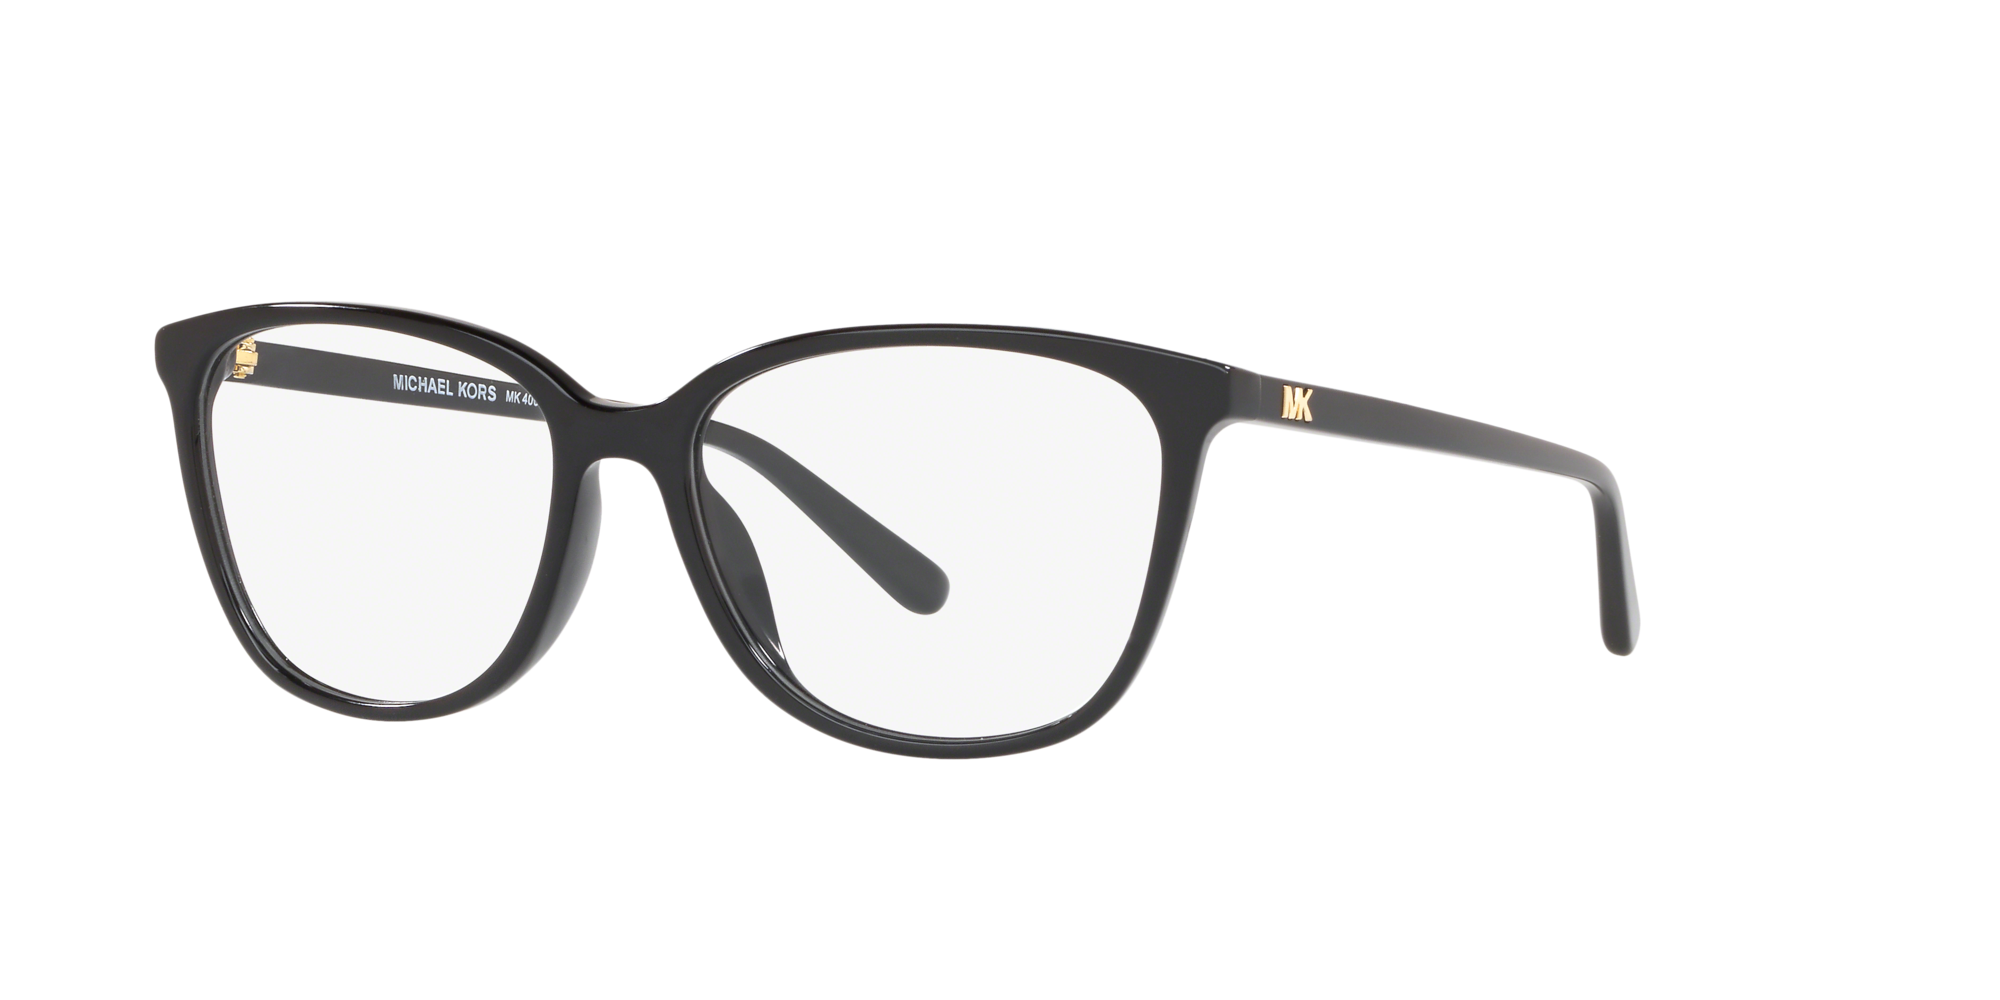 Michael Kors glasses eyeglasses for women  Glasses Gallery